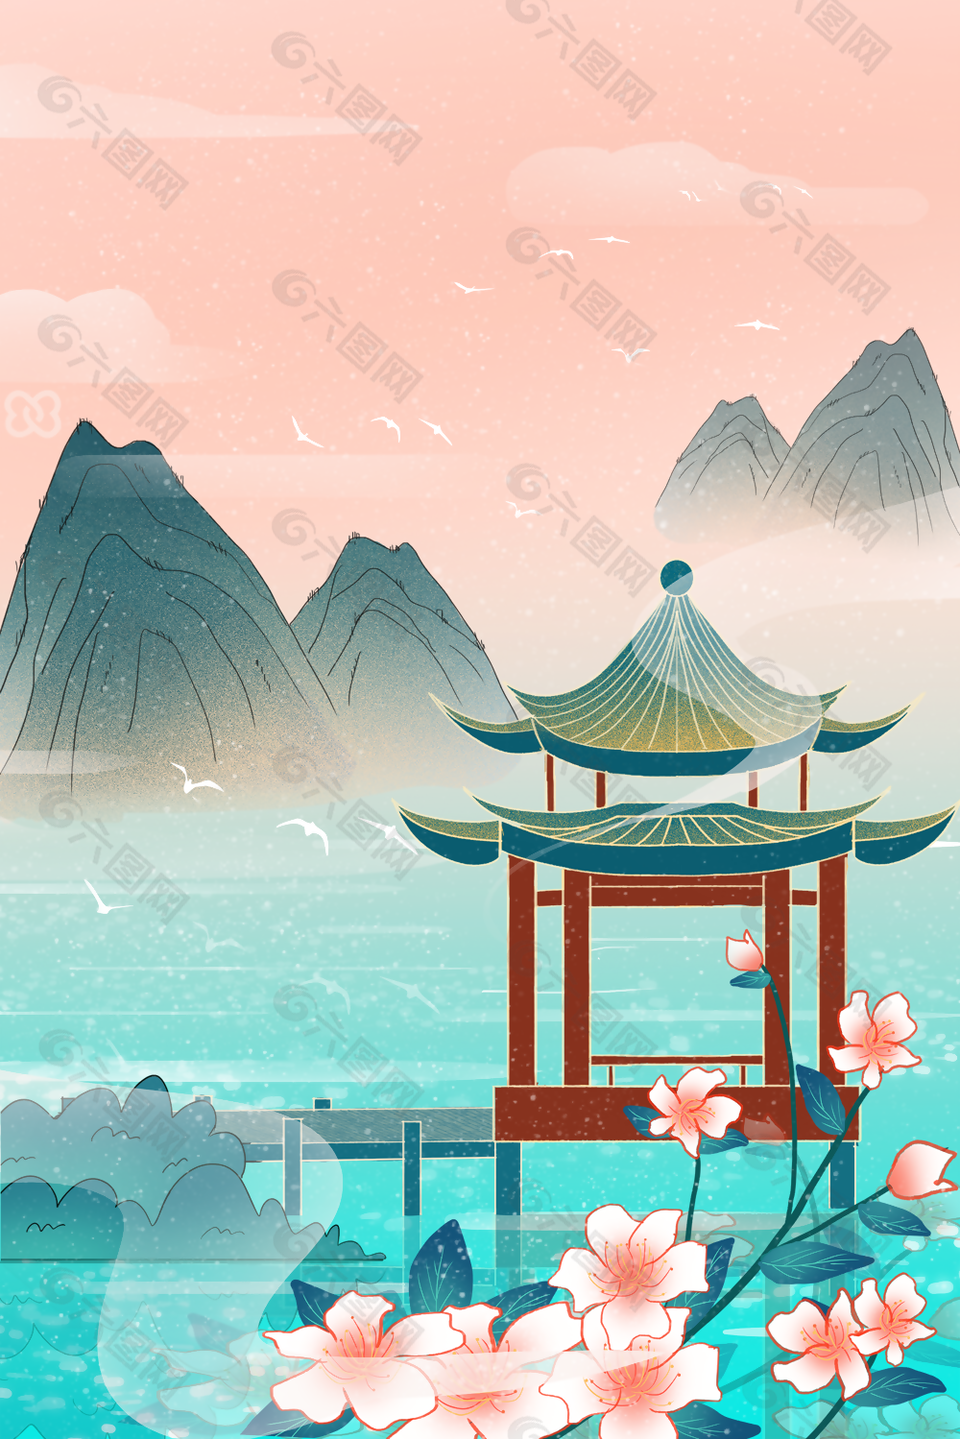 唯美复古中国风山水亭台插画背景图设计